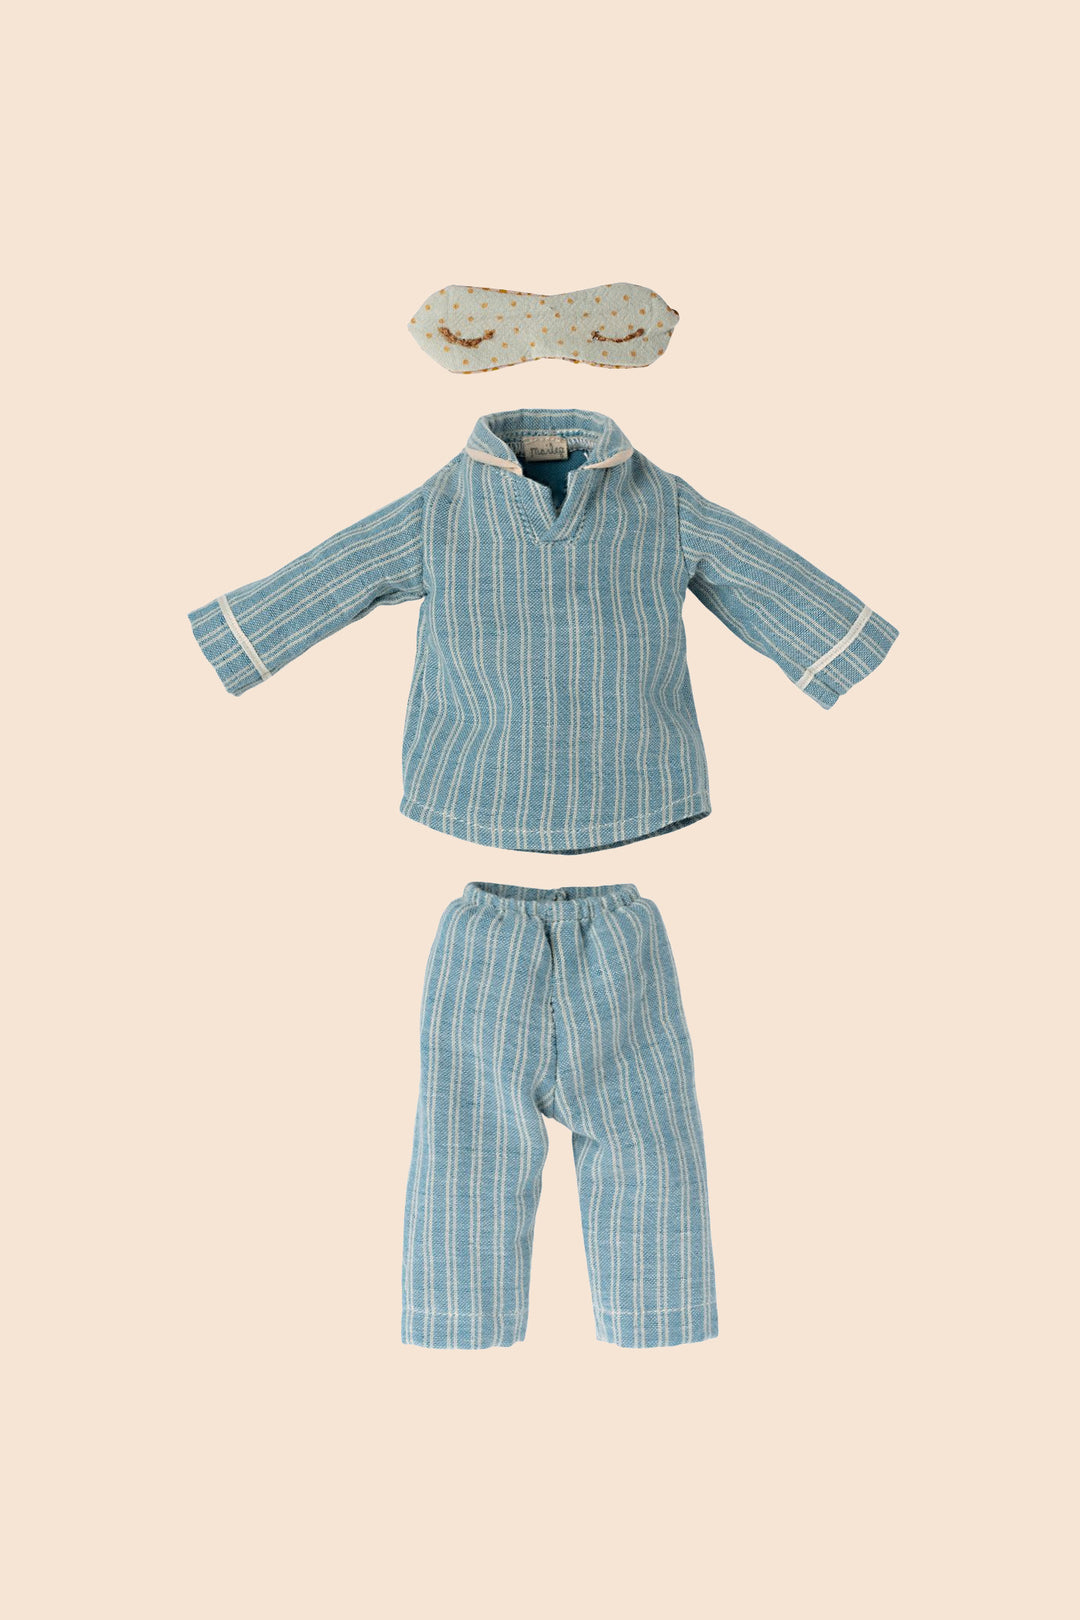 Maileg Pyjamas Medium Mouse - Clothes